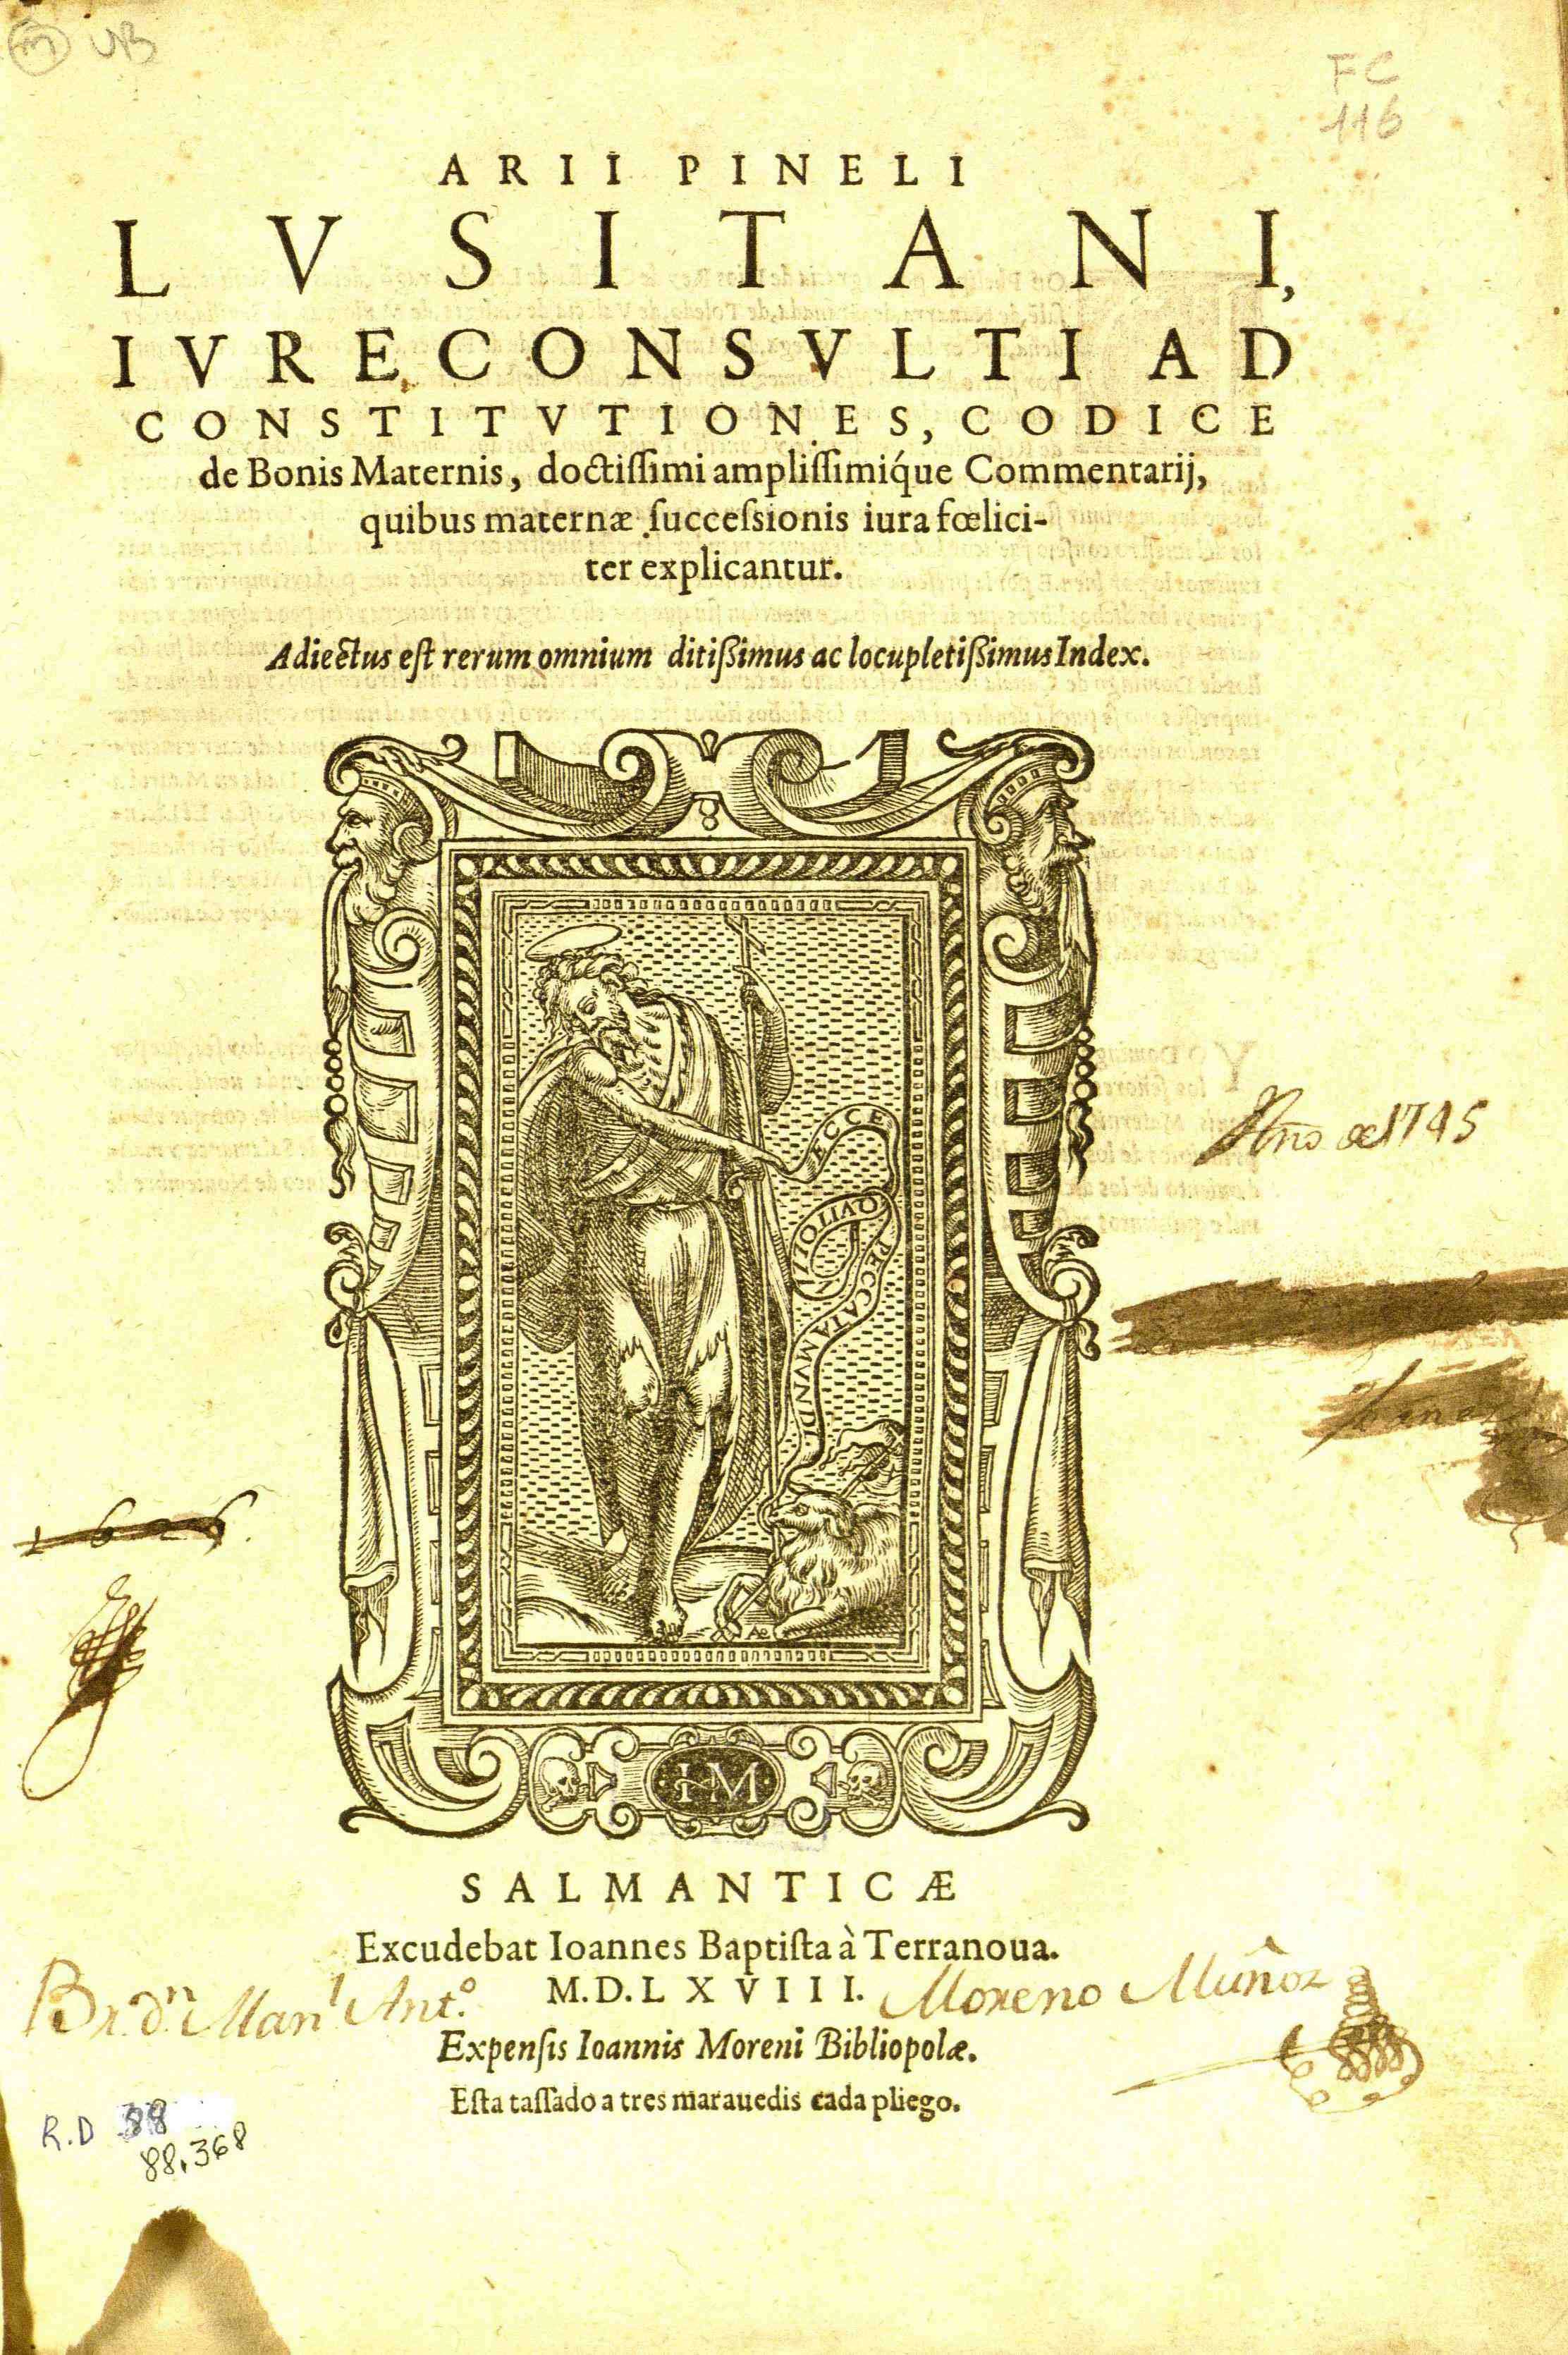 Ad Constitutiones, codice de Bonis Maternis, 1568